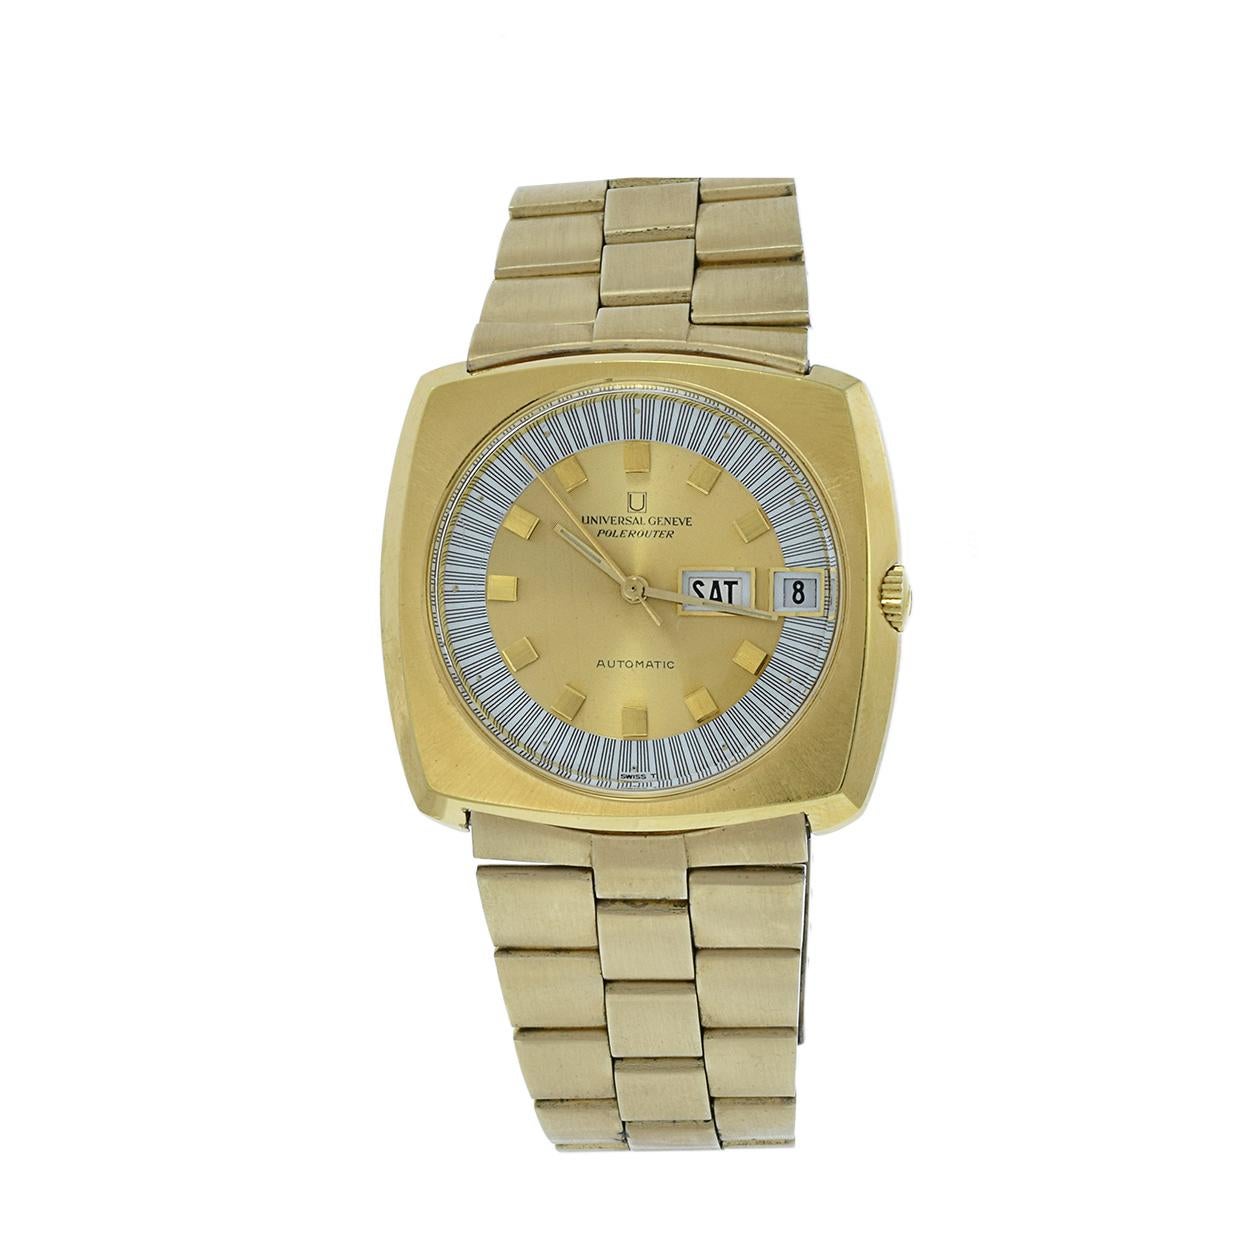 Le garde-temps vintage des années 1970 Rare Universal Genève Polerouter Automatic est une montre distinctive et recherchée. Enveloppée dans un boîtier et un bracelet carrés plaqués or de 40 mm de côté, cette montre affiche le style caractéristique